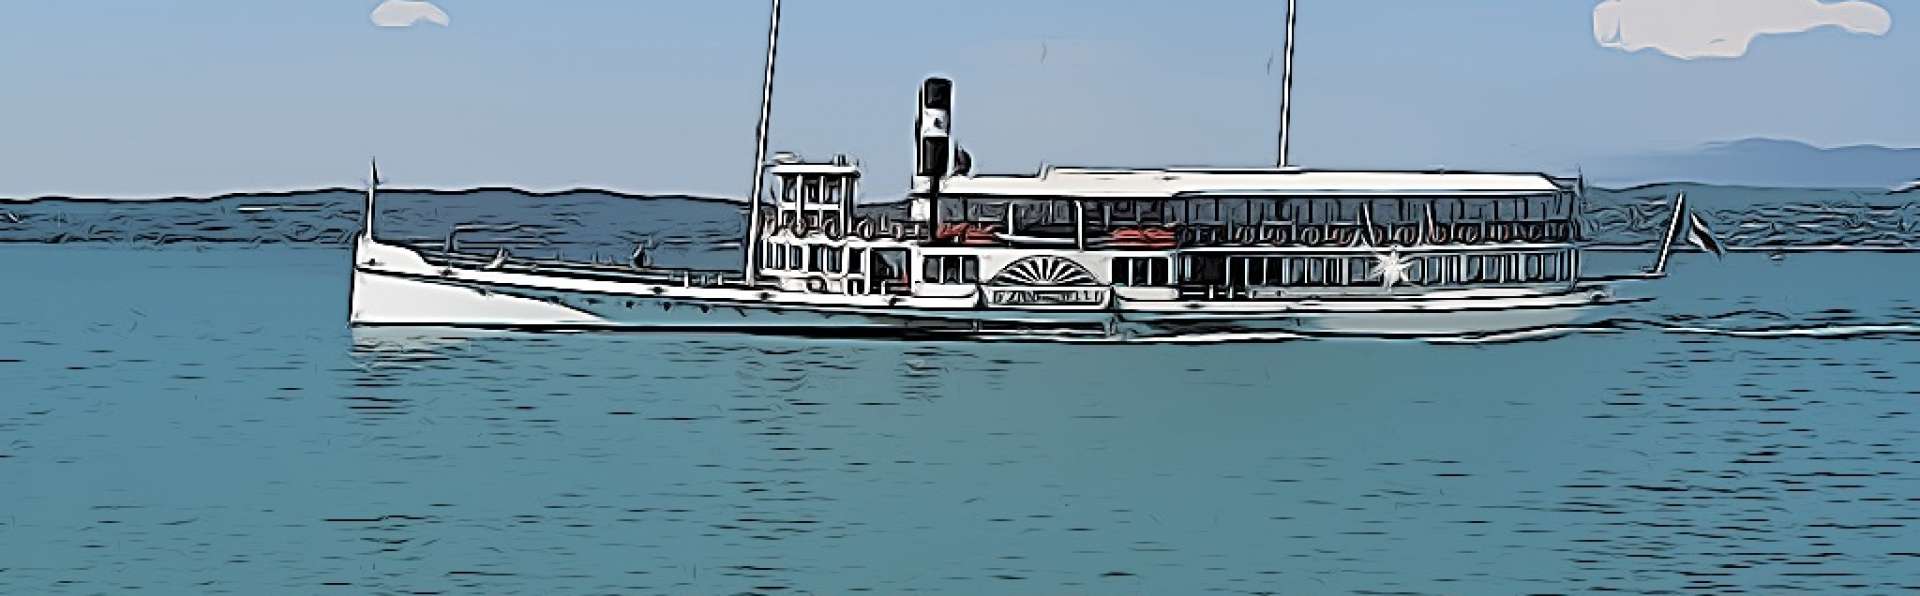 Orari dei traghetti sul Lago di Garda